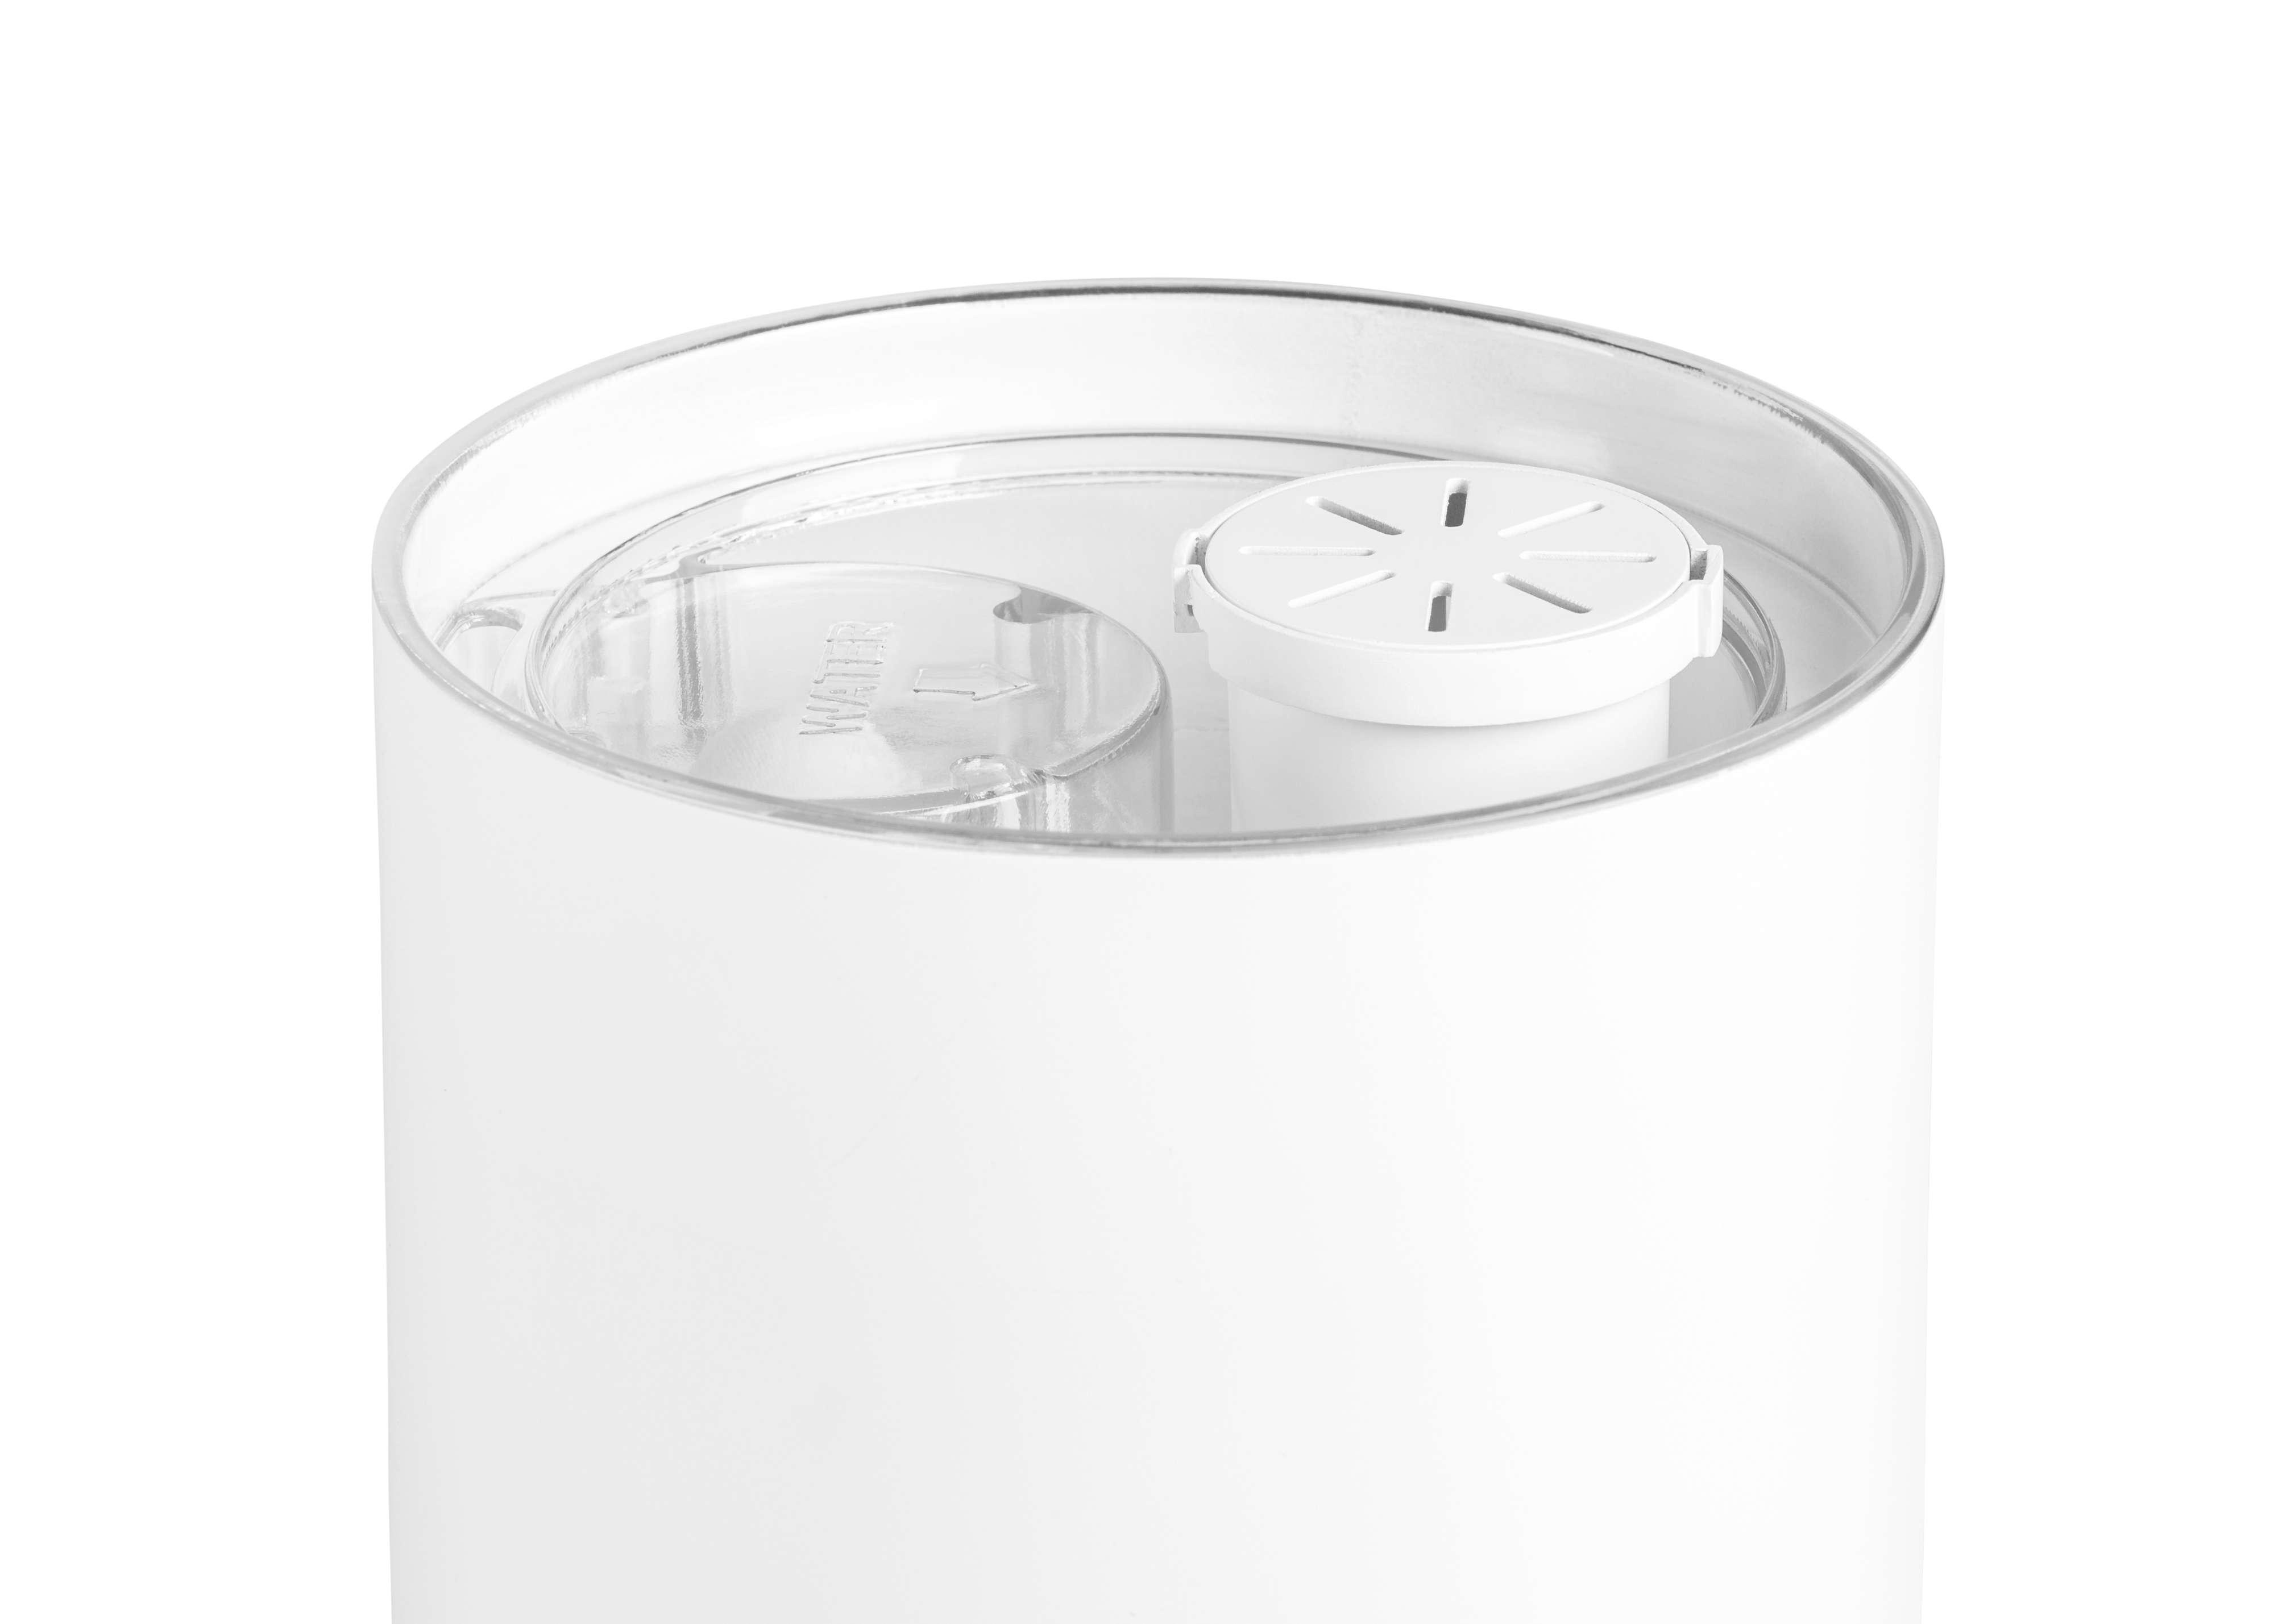 DUUX Beam Mini 30 2 Luftbefeuchter Watt, Raumgröße: (20 Weiß m²)